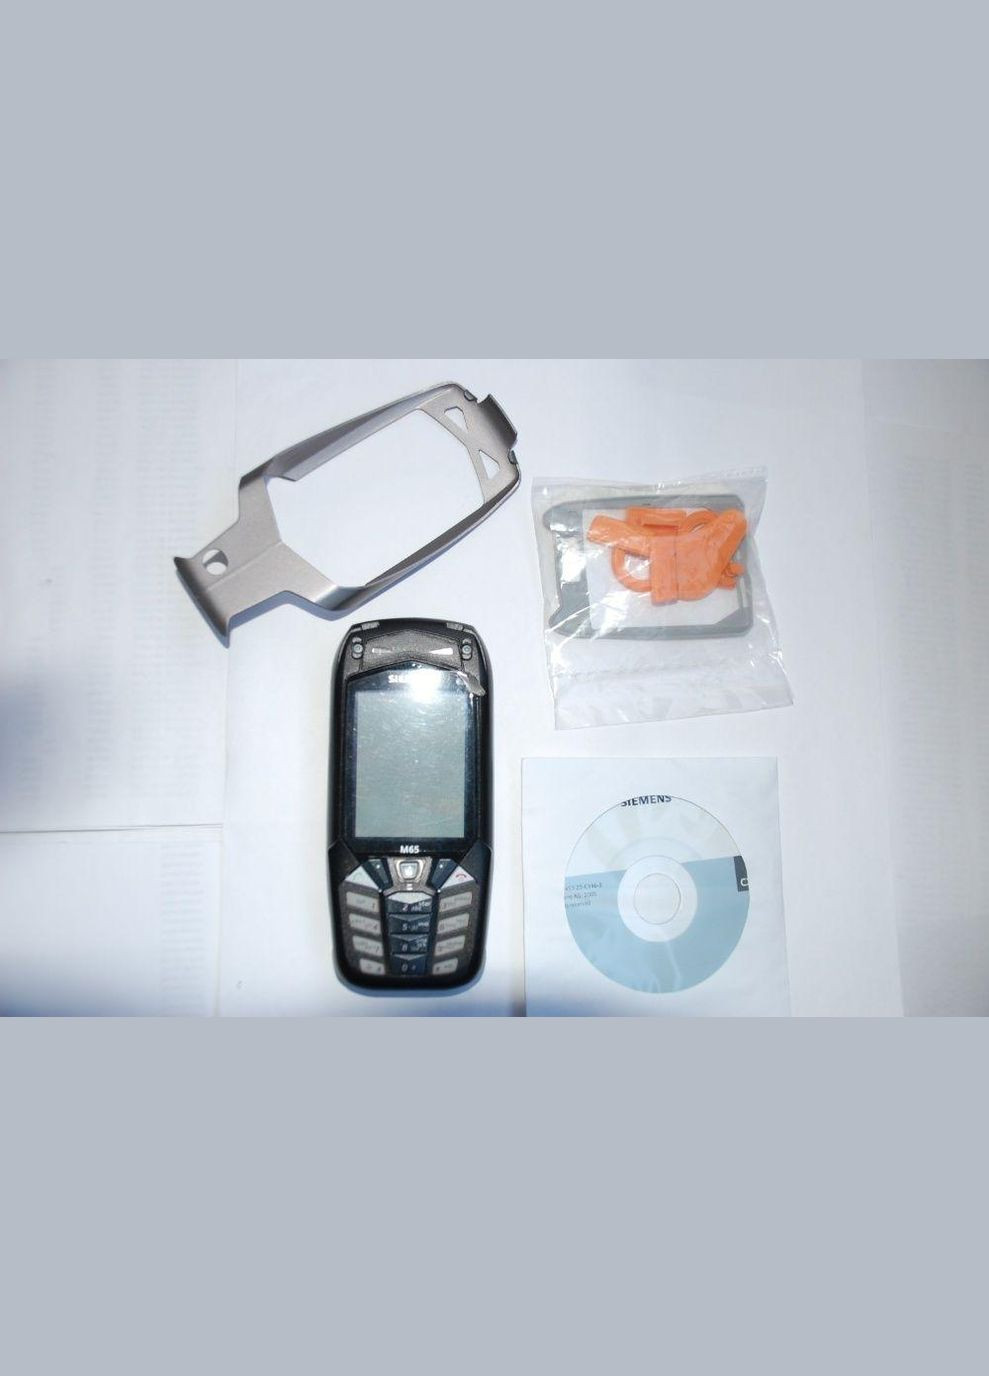 Мобильный телефон M65 раритет Siemens (292132675)